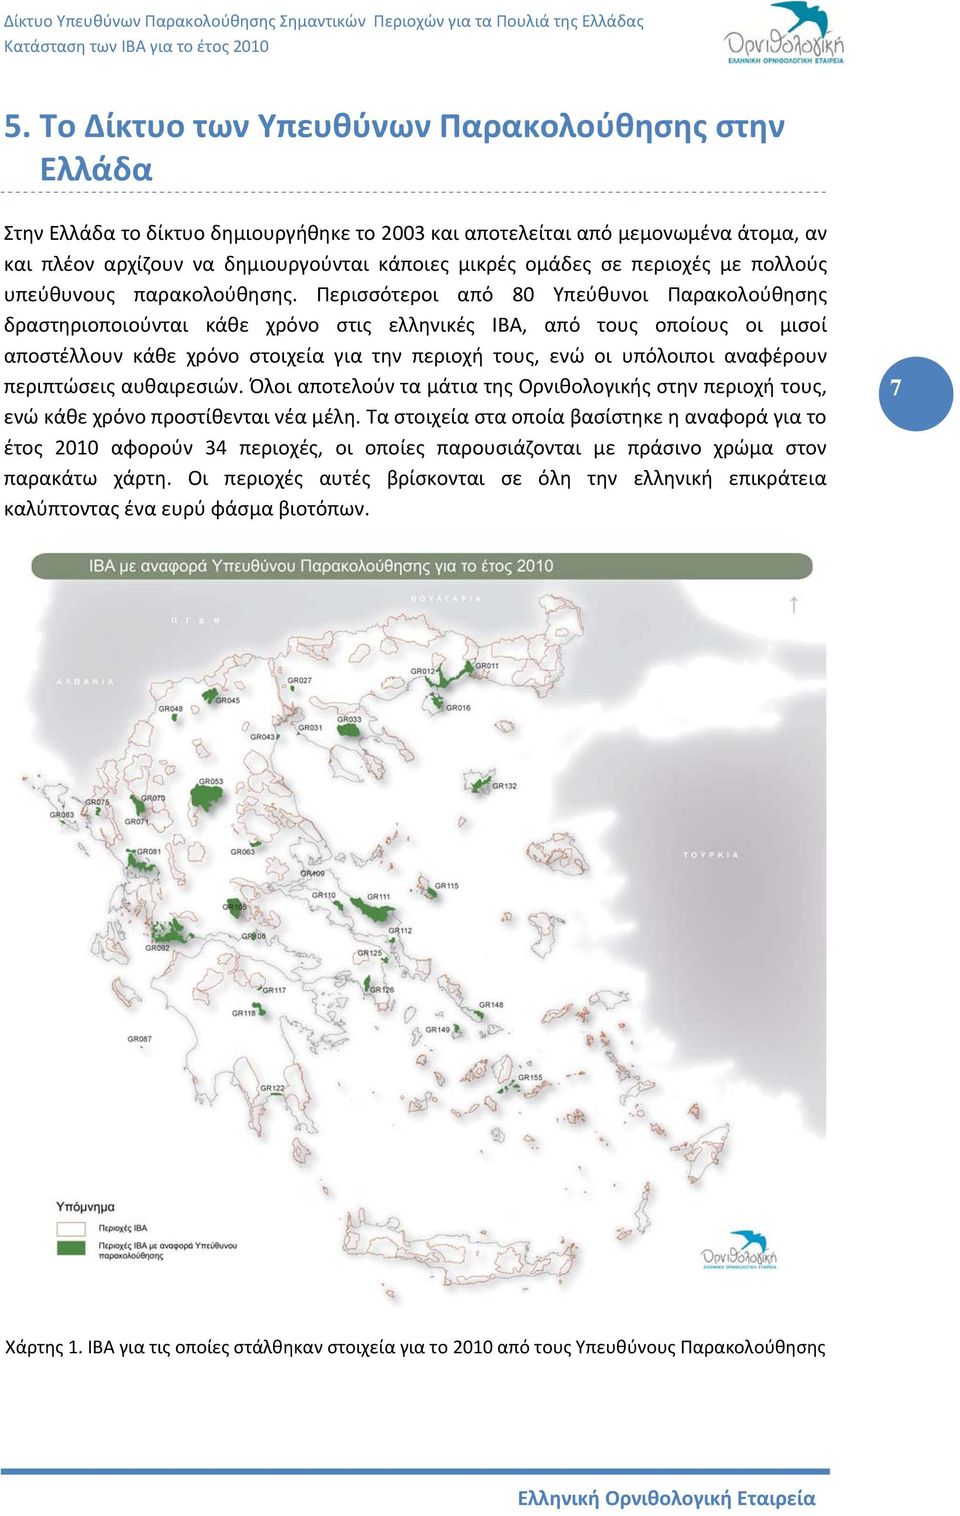 Περισσότεροι από 80 Υπεύθυνοι Παρακολούθησης δραστηριοποιούνται κάθε χρόνο στις ελληνικές ΙΒΑ, από τους οποίους οι μισοί αποστέλλουν κάθε χρόνο στοιχεία για την περιοχή τους, ενώ οι υπόλοιποι